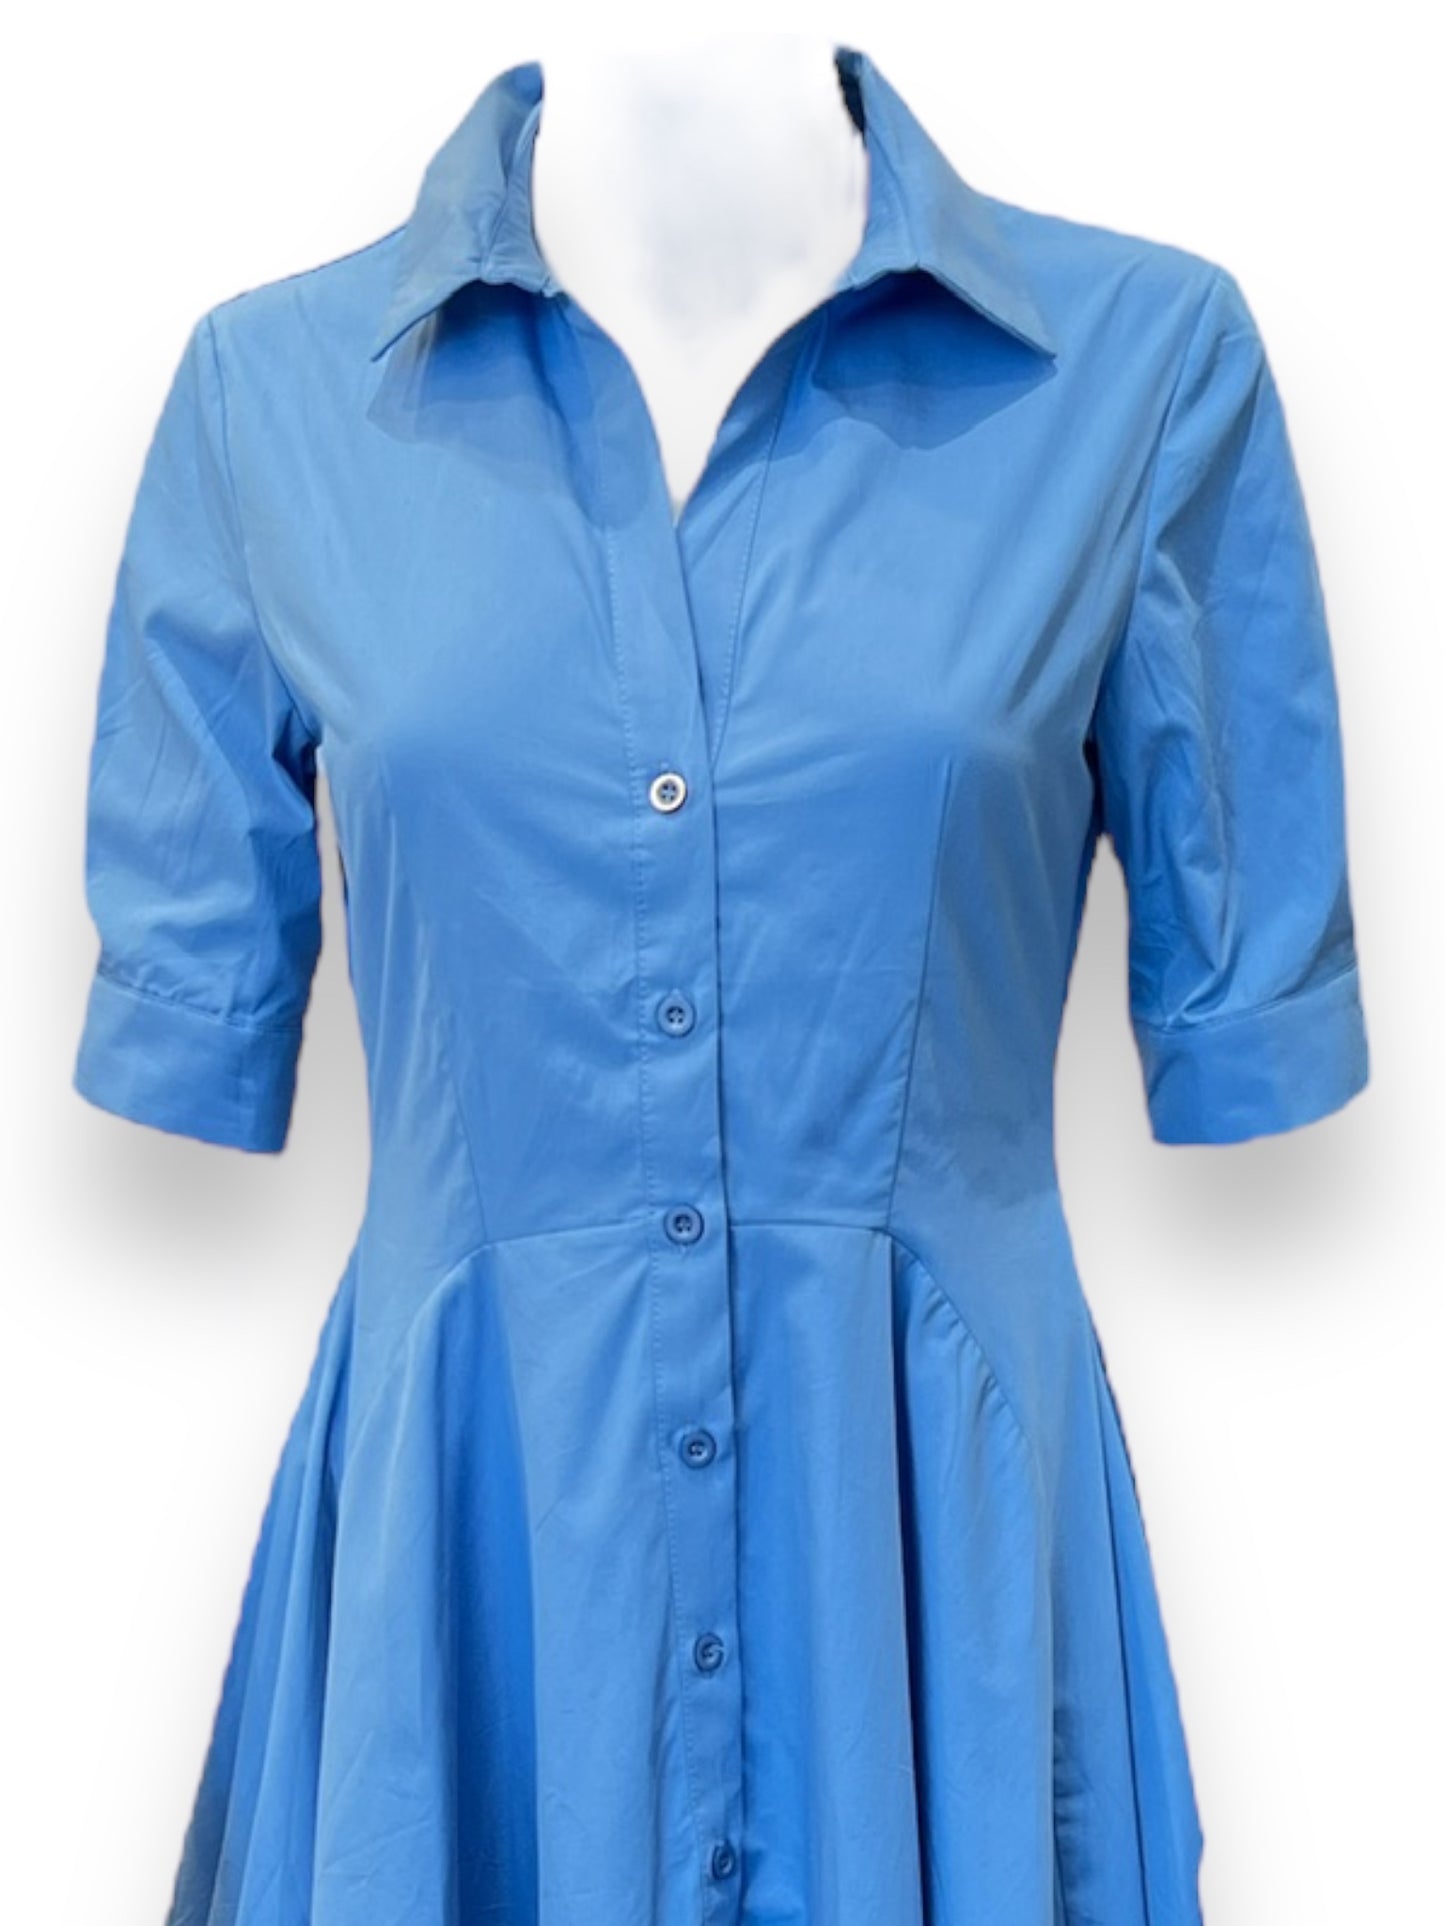 Cielo Blu Dress